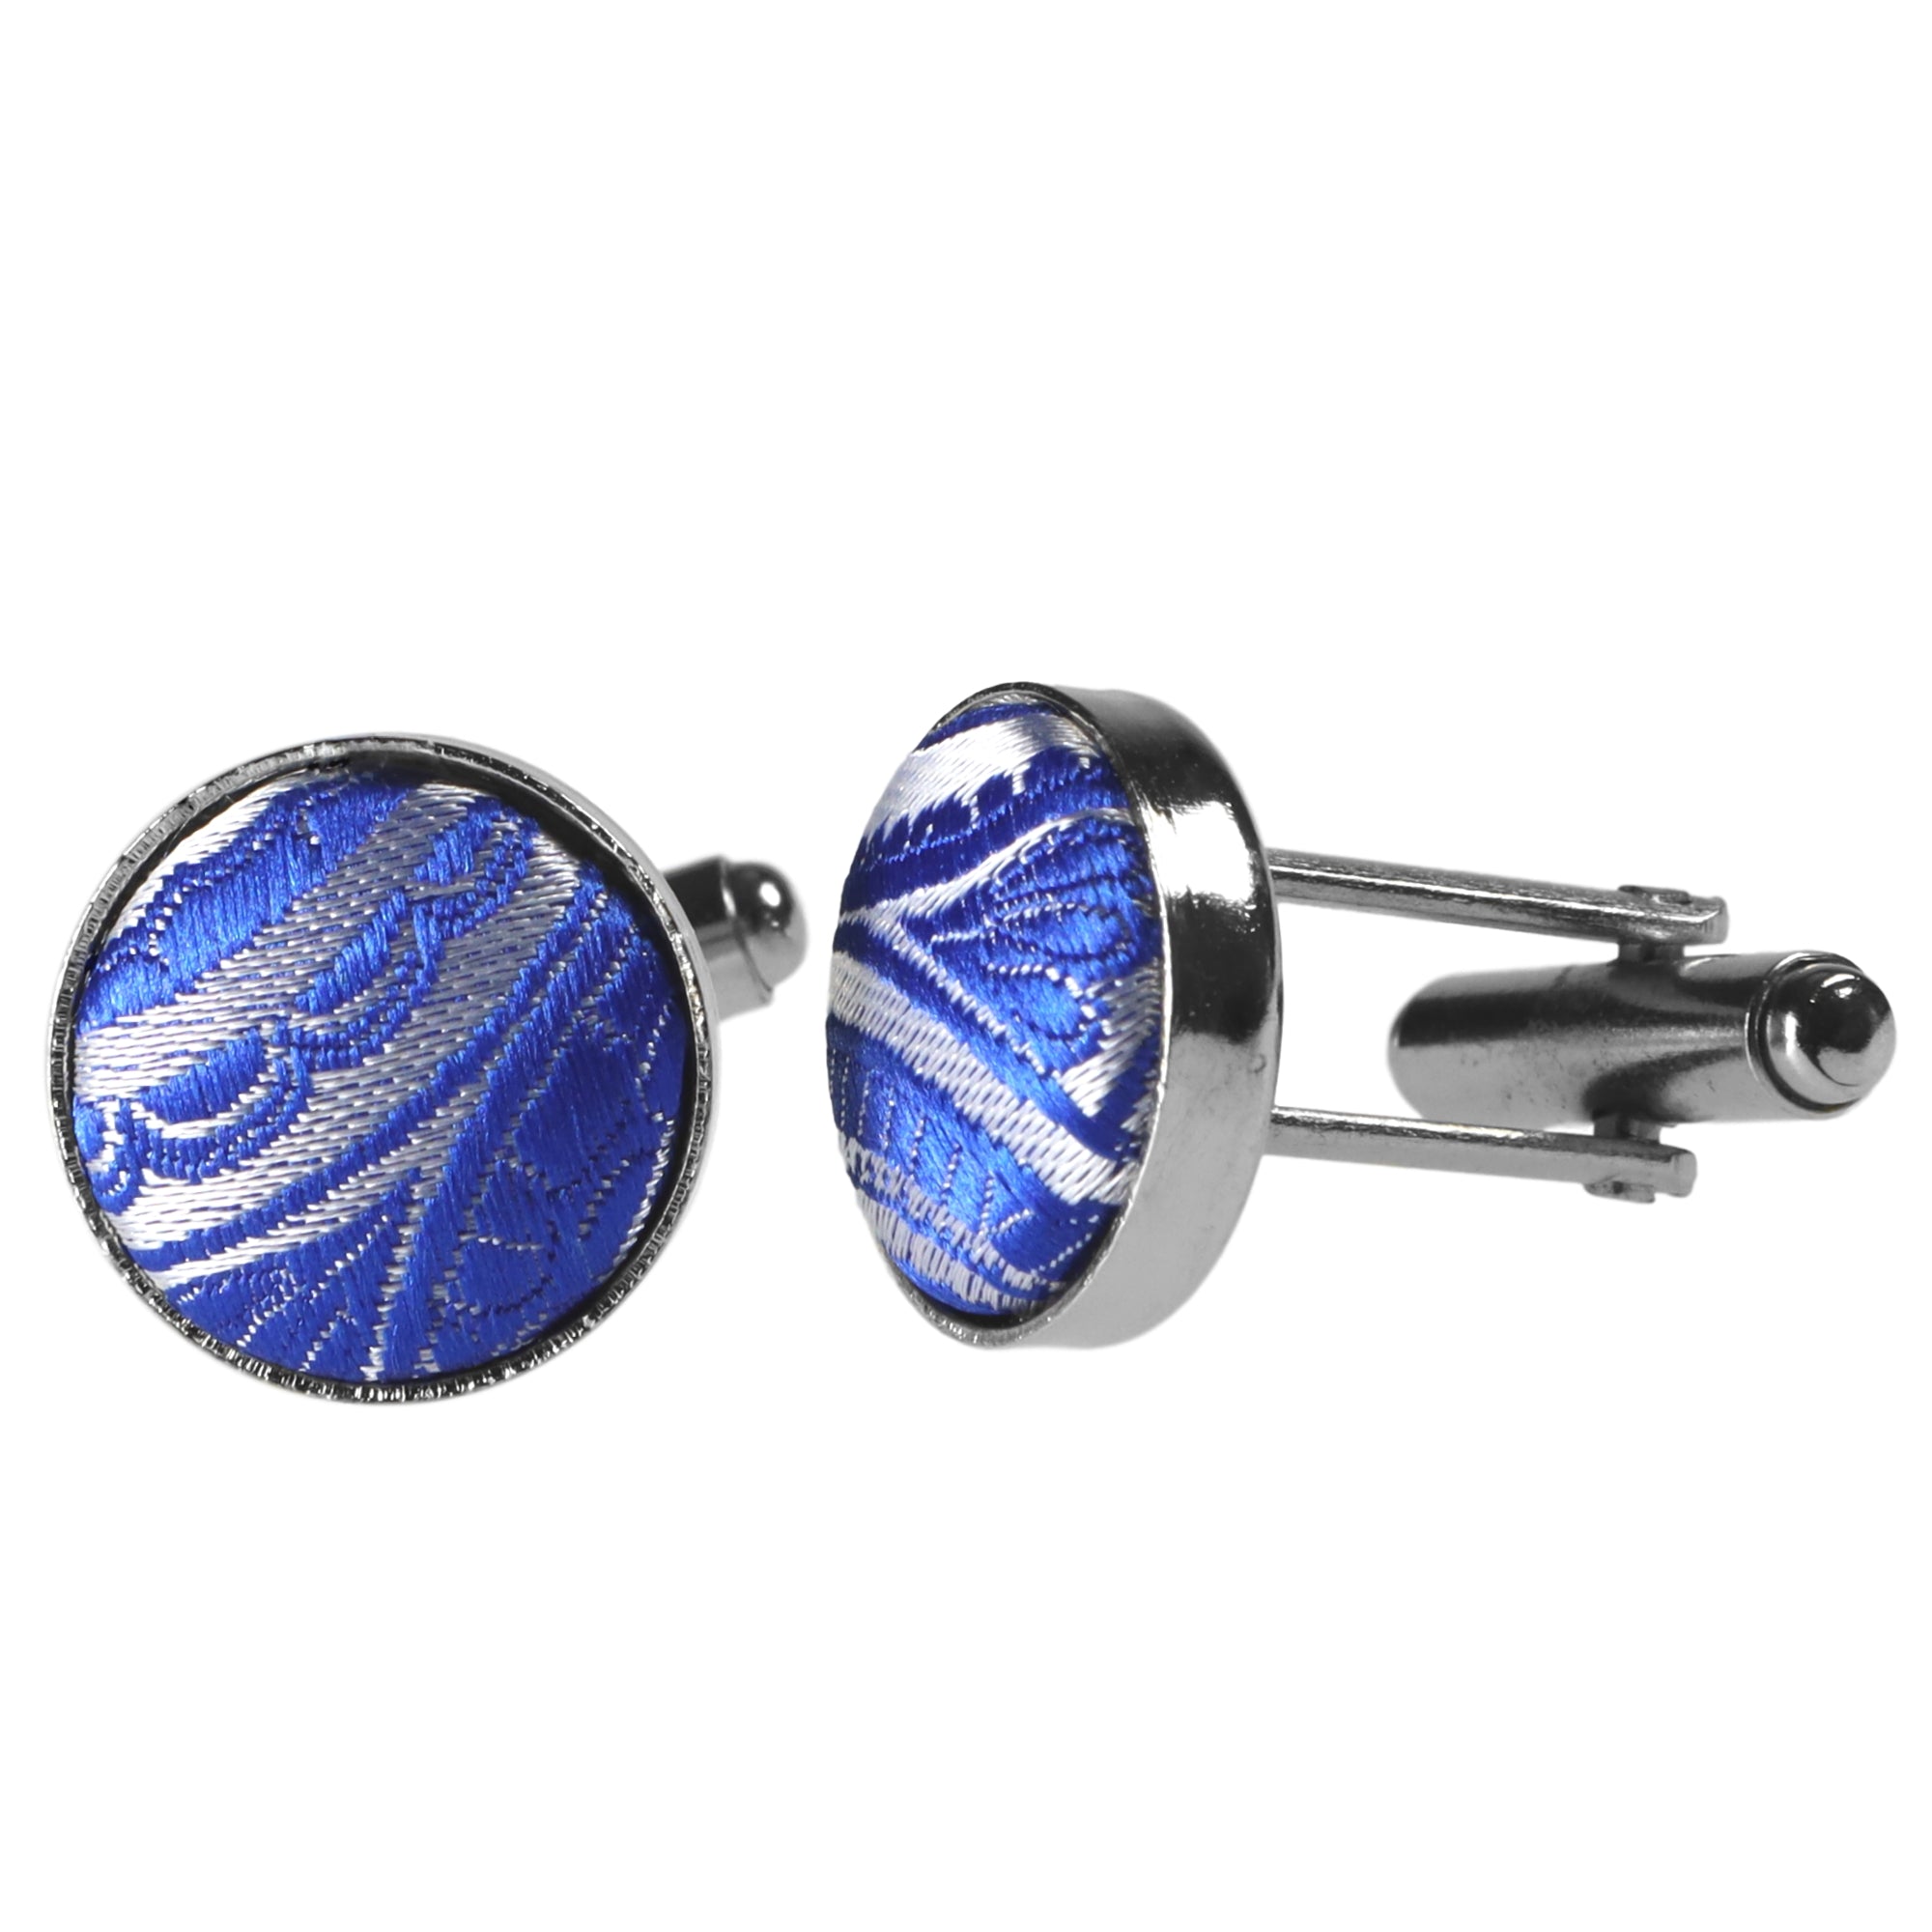 Kaufen Sie Silber-Blaue designt | GASSANIshop.de für Krawatten - GASSANI Paisley-Krawatte